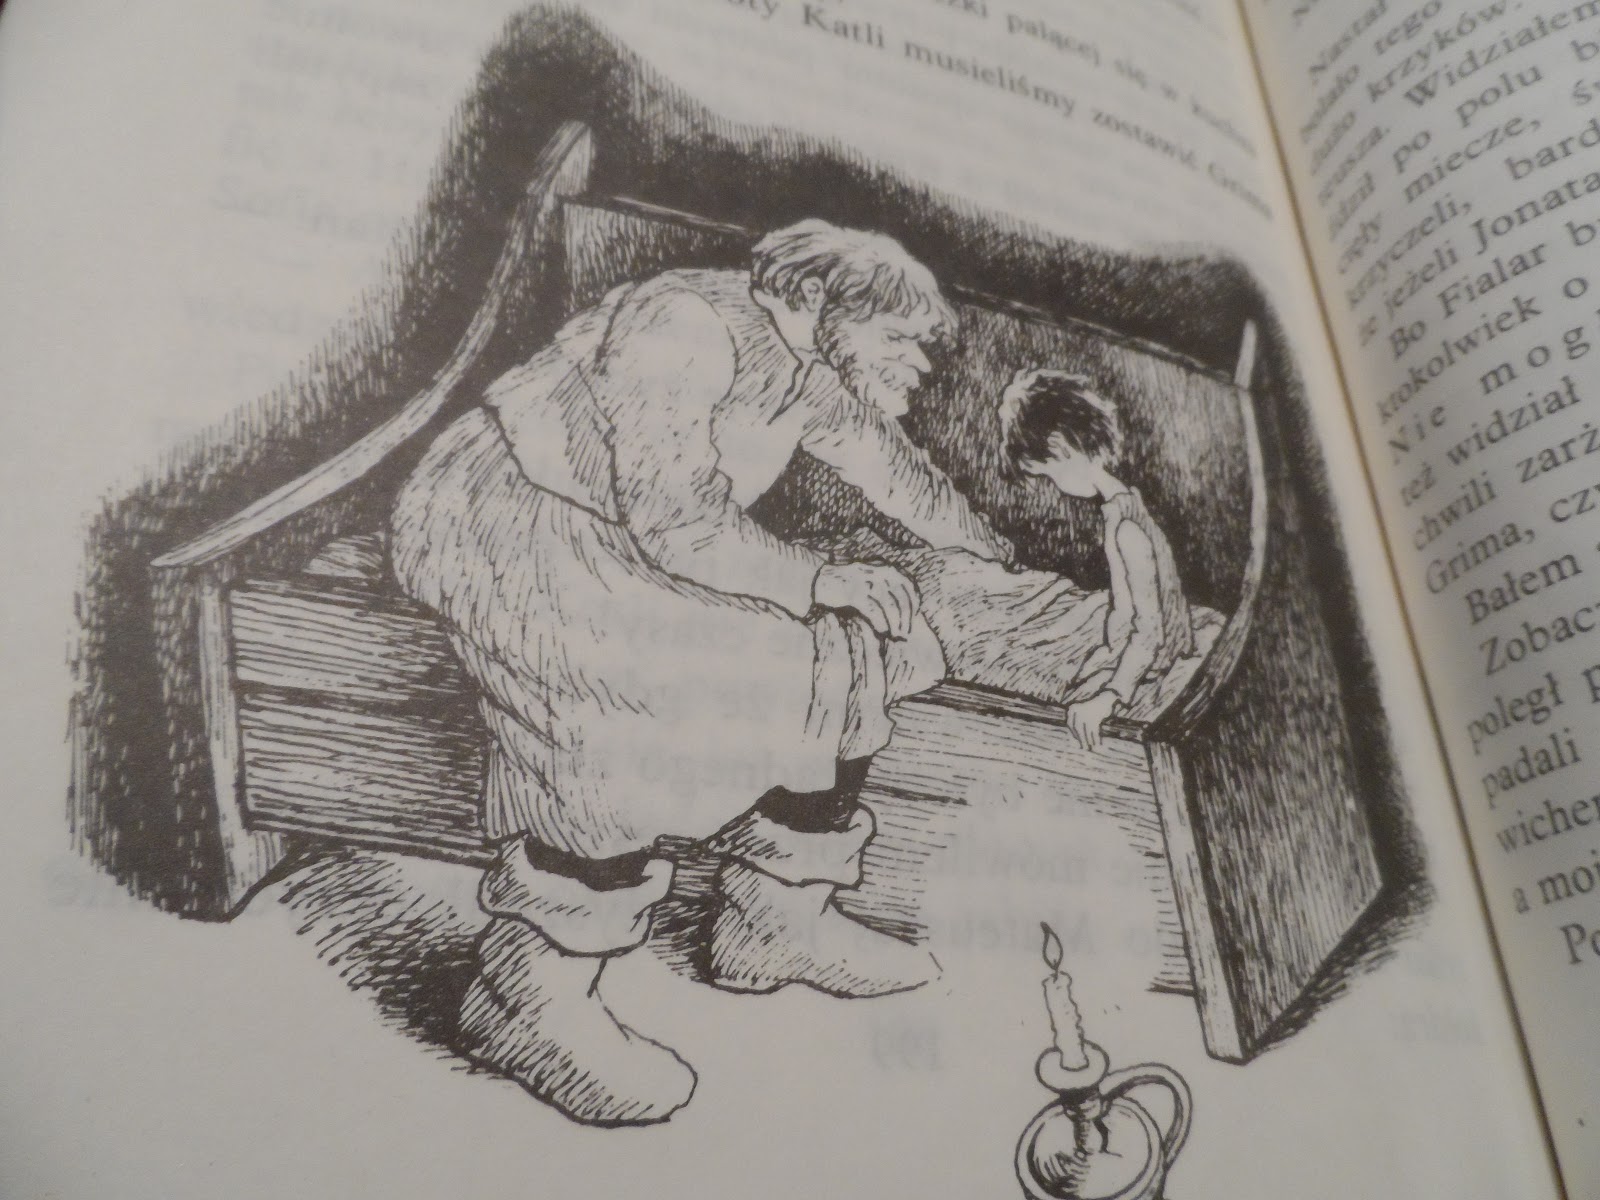 Kartkówka Z Bracia Lwie Serce "Bracia Lwie Serce", Astrid Lindgren; ilustracje: Ilon Wikland